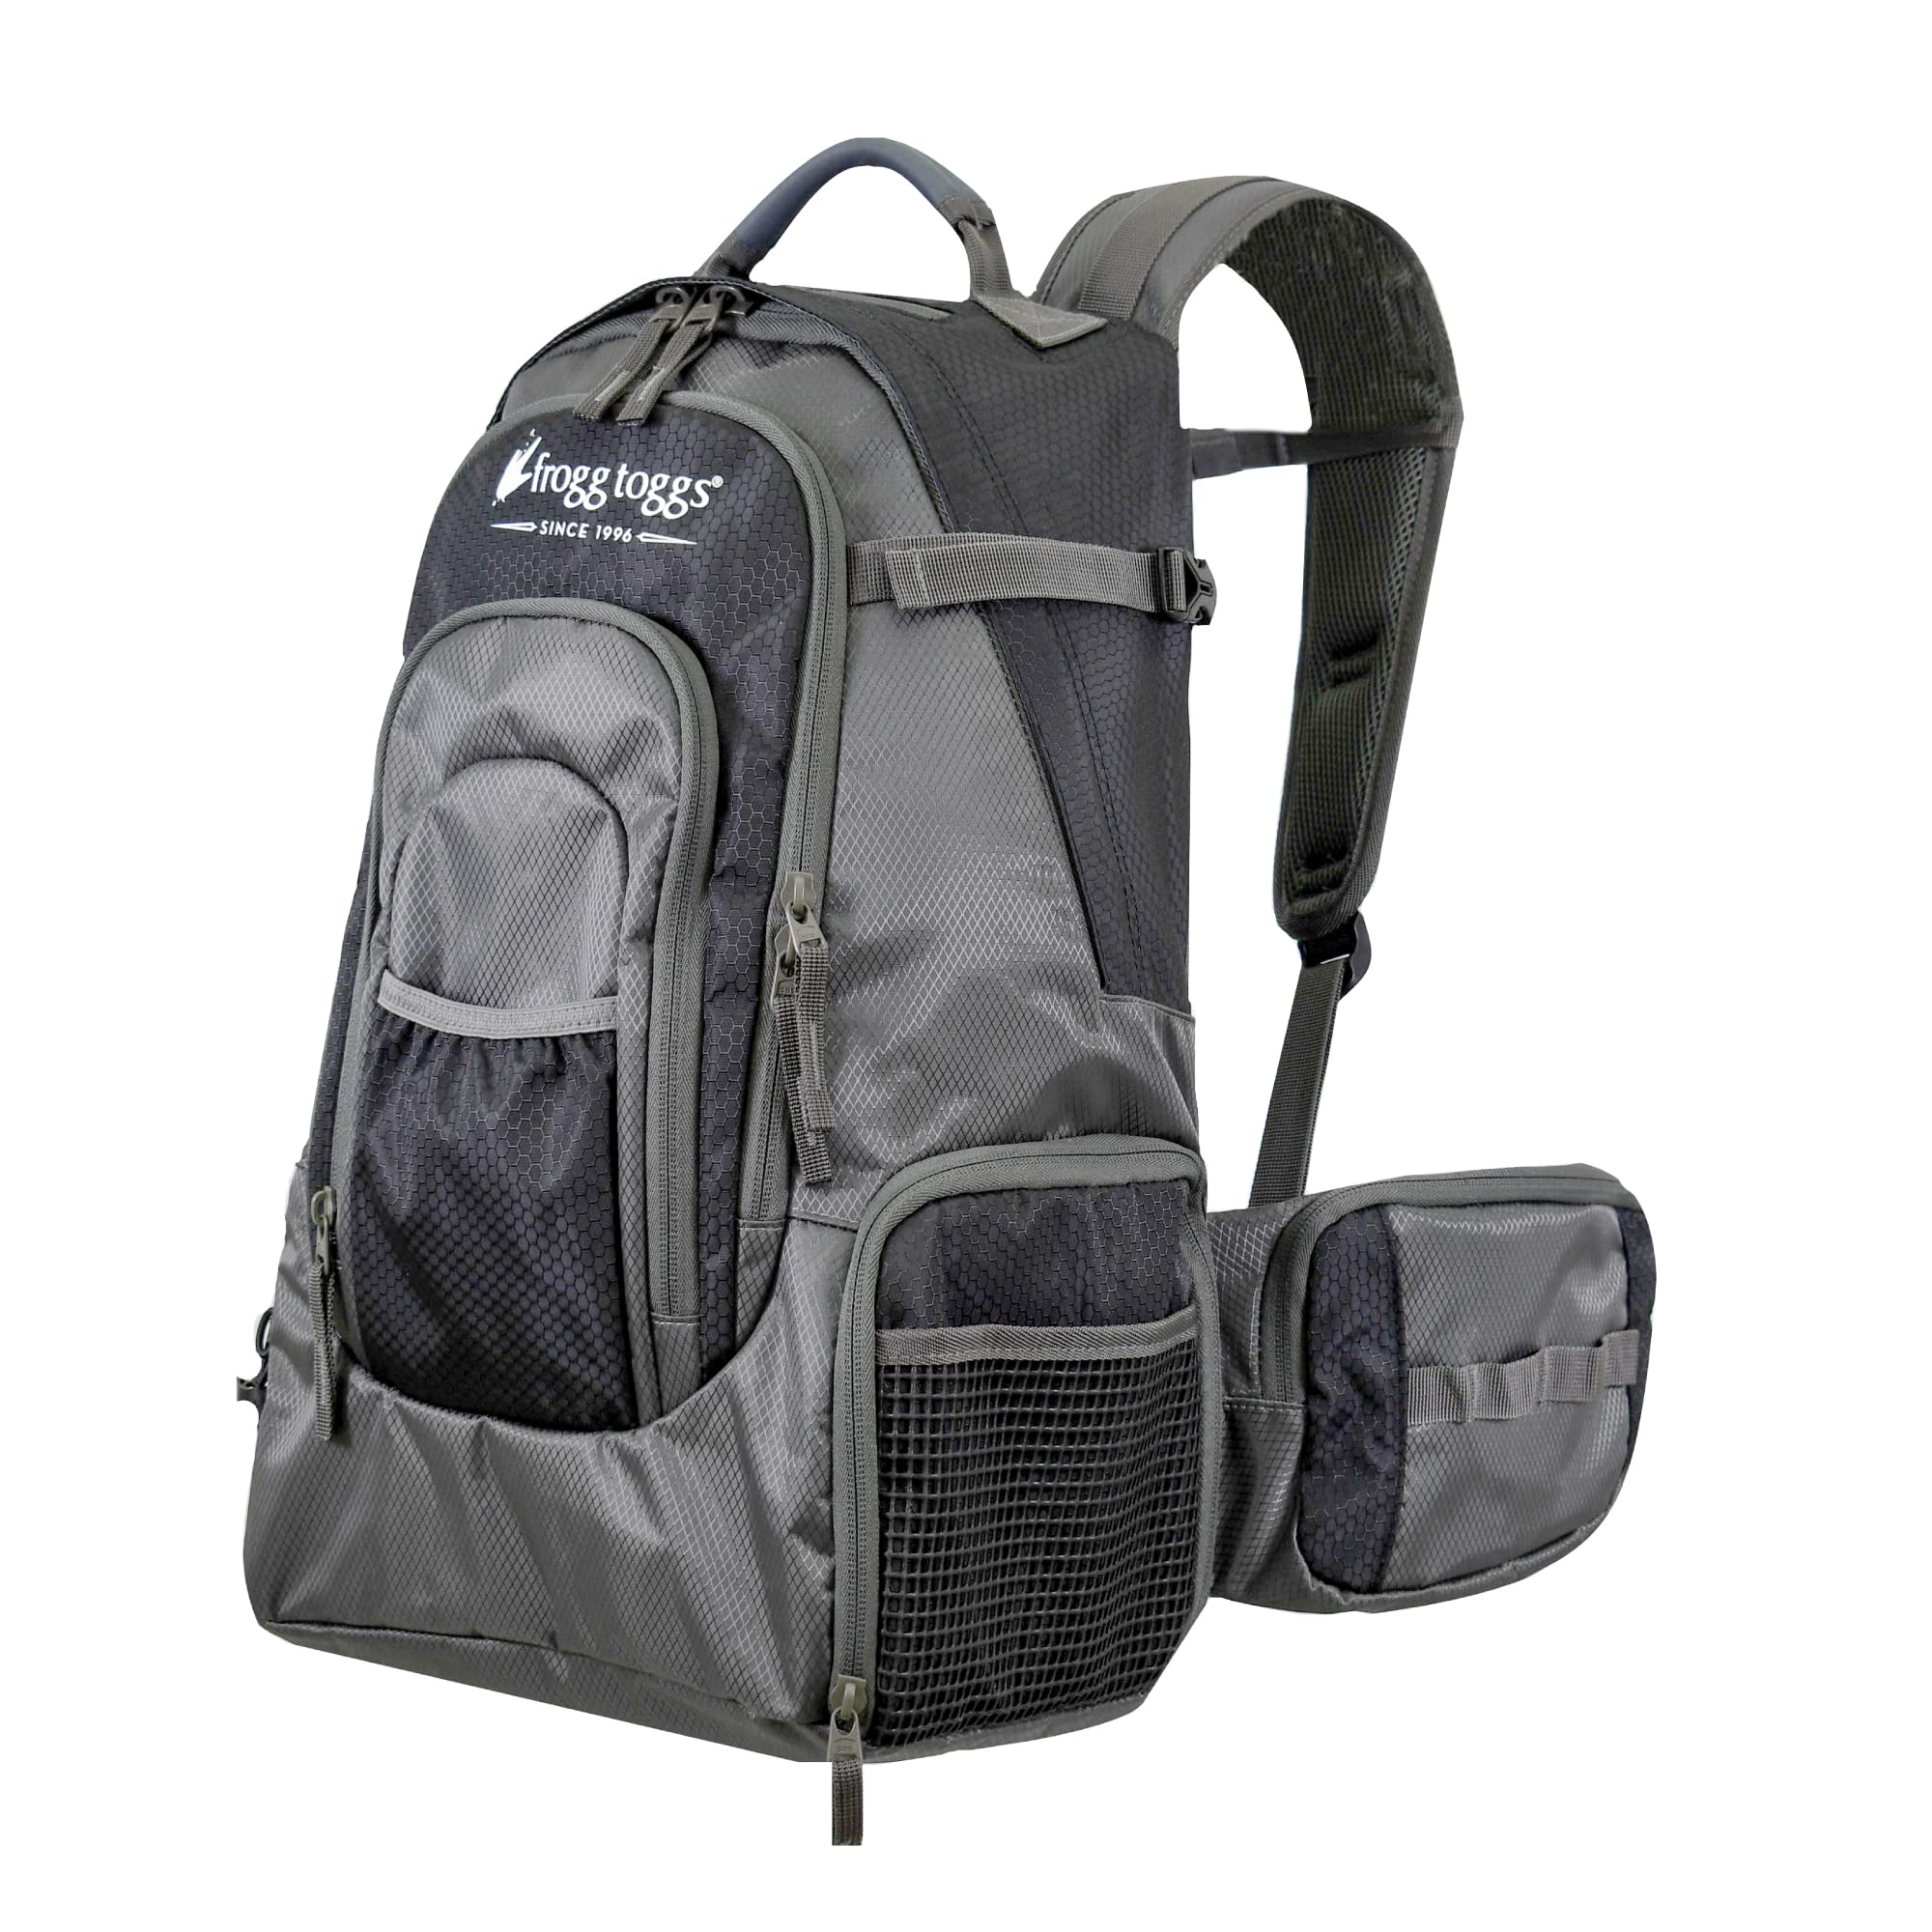 送料無料FROGG TOGGS i3 Fishing Backpack Tackle Storage Organization and Easy Transport Black One Size並行輸入品